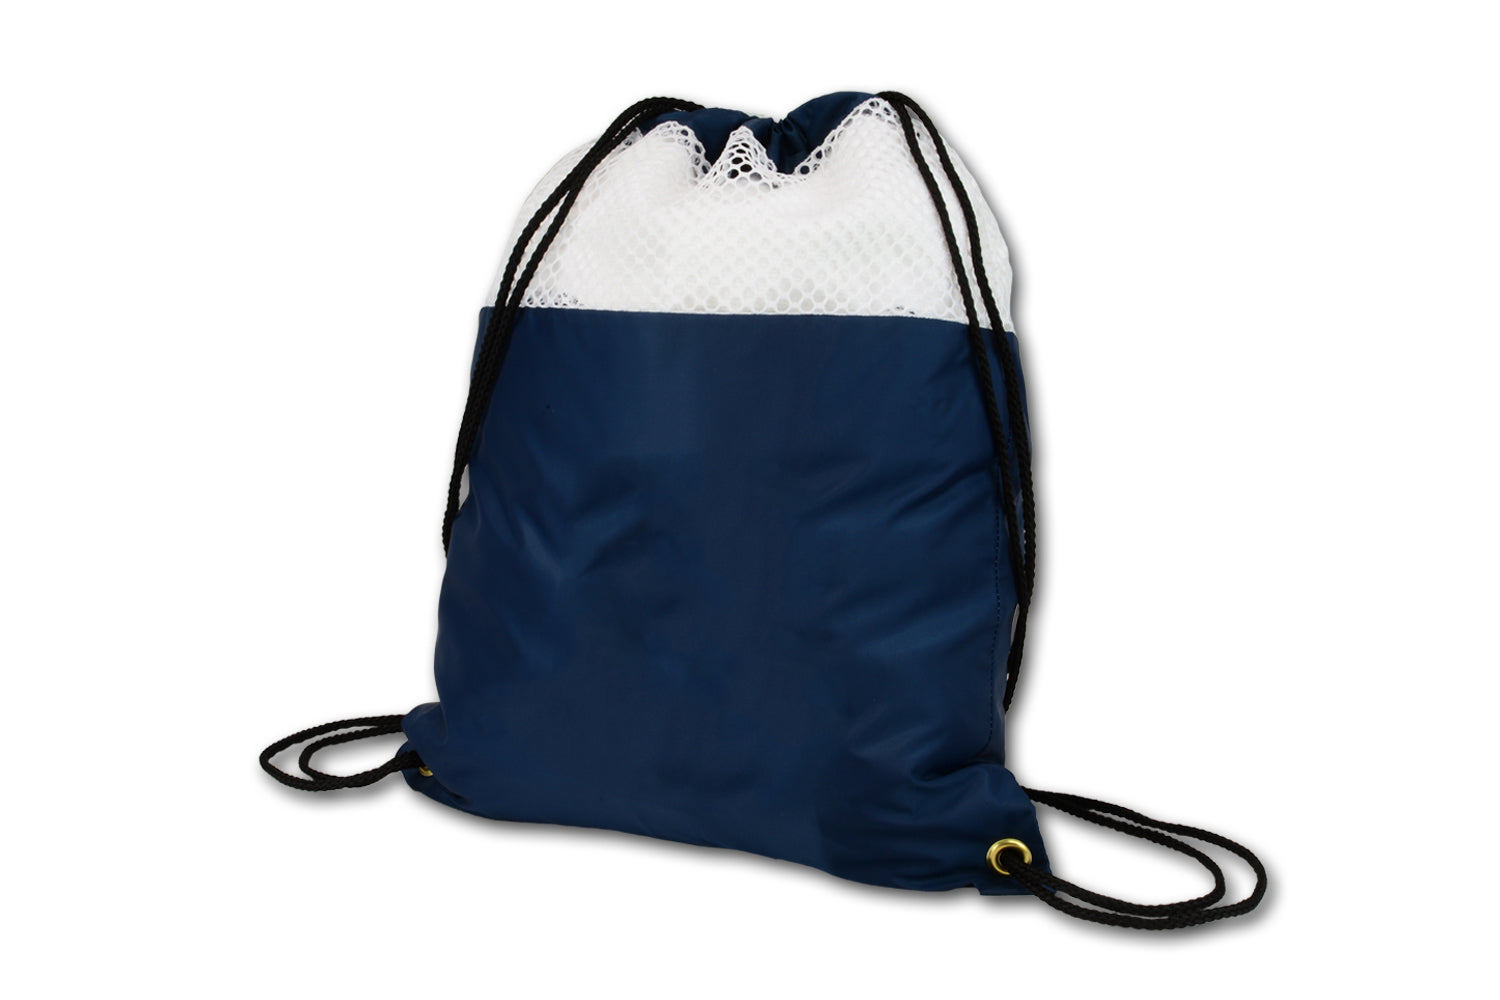 Bolsa para ropa sucia de 15"x20" con cierre tipo mochila - Paquete de 2 unidades